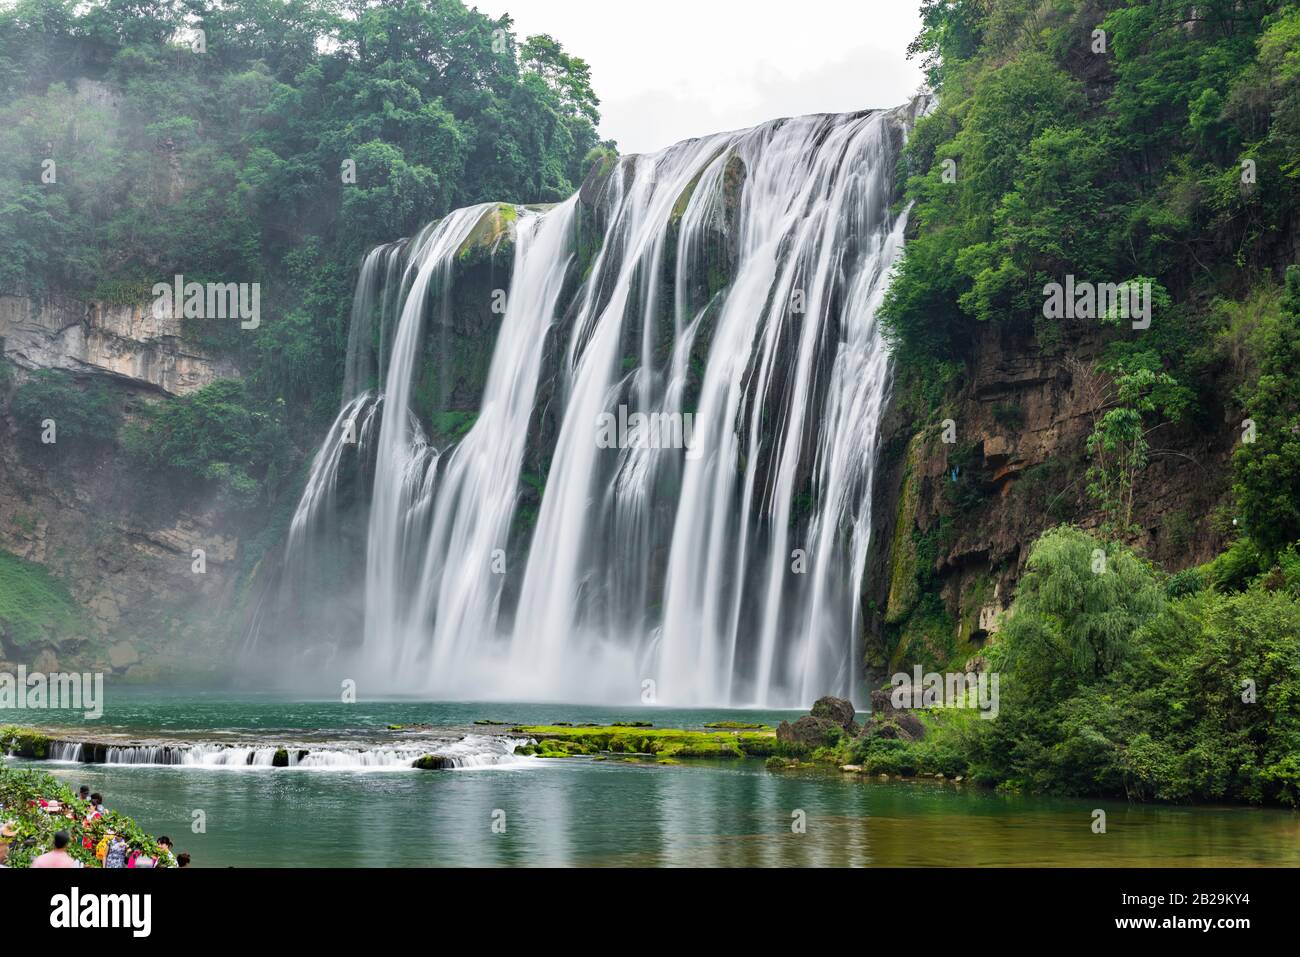 Der Doupotang-Wasserfall des Huangguoshu-Wasserfalls liegt am Fluss